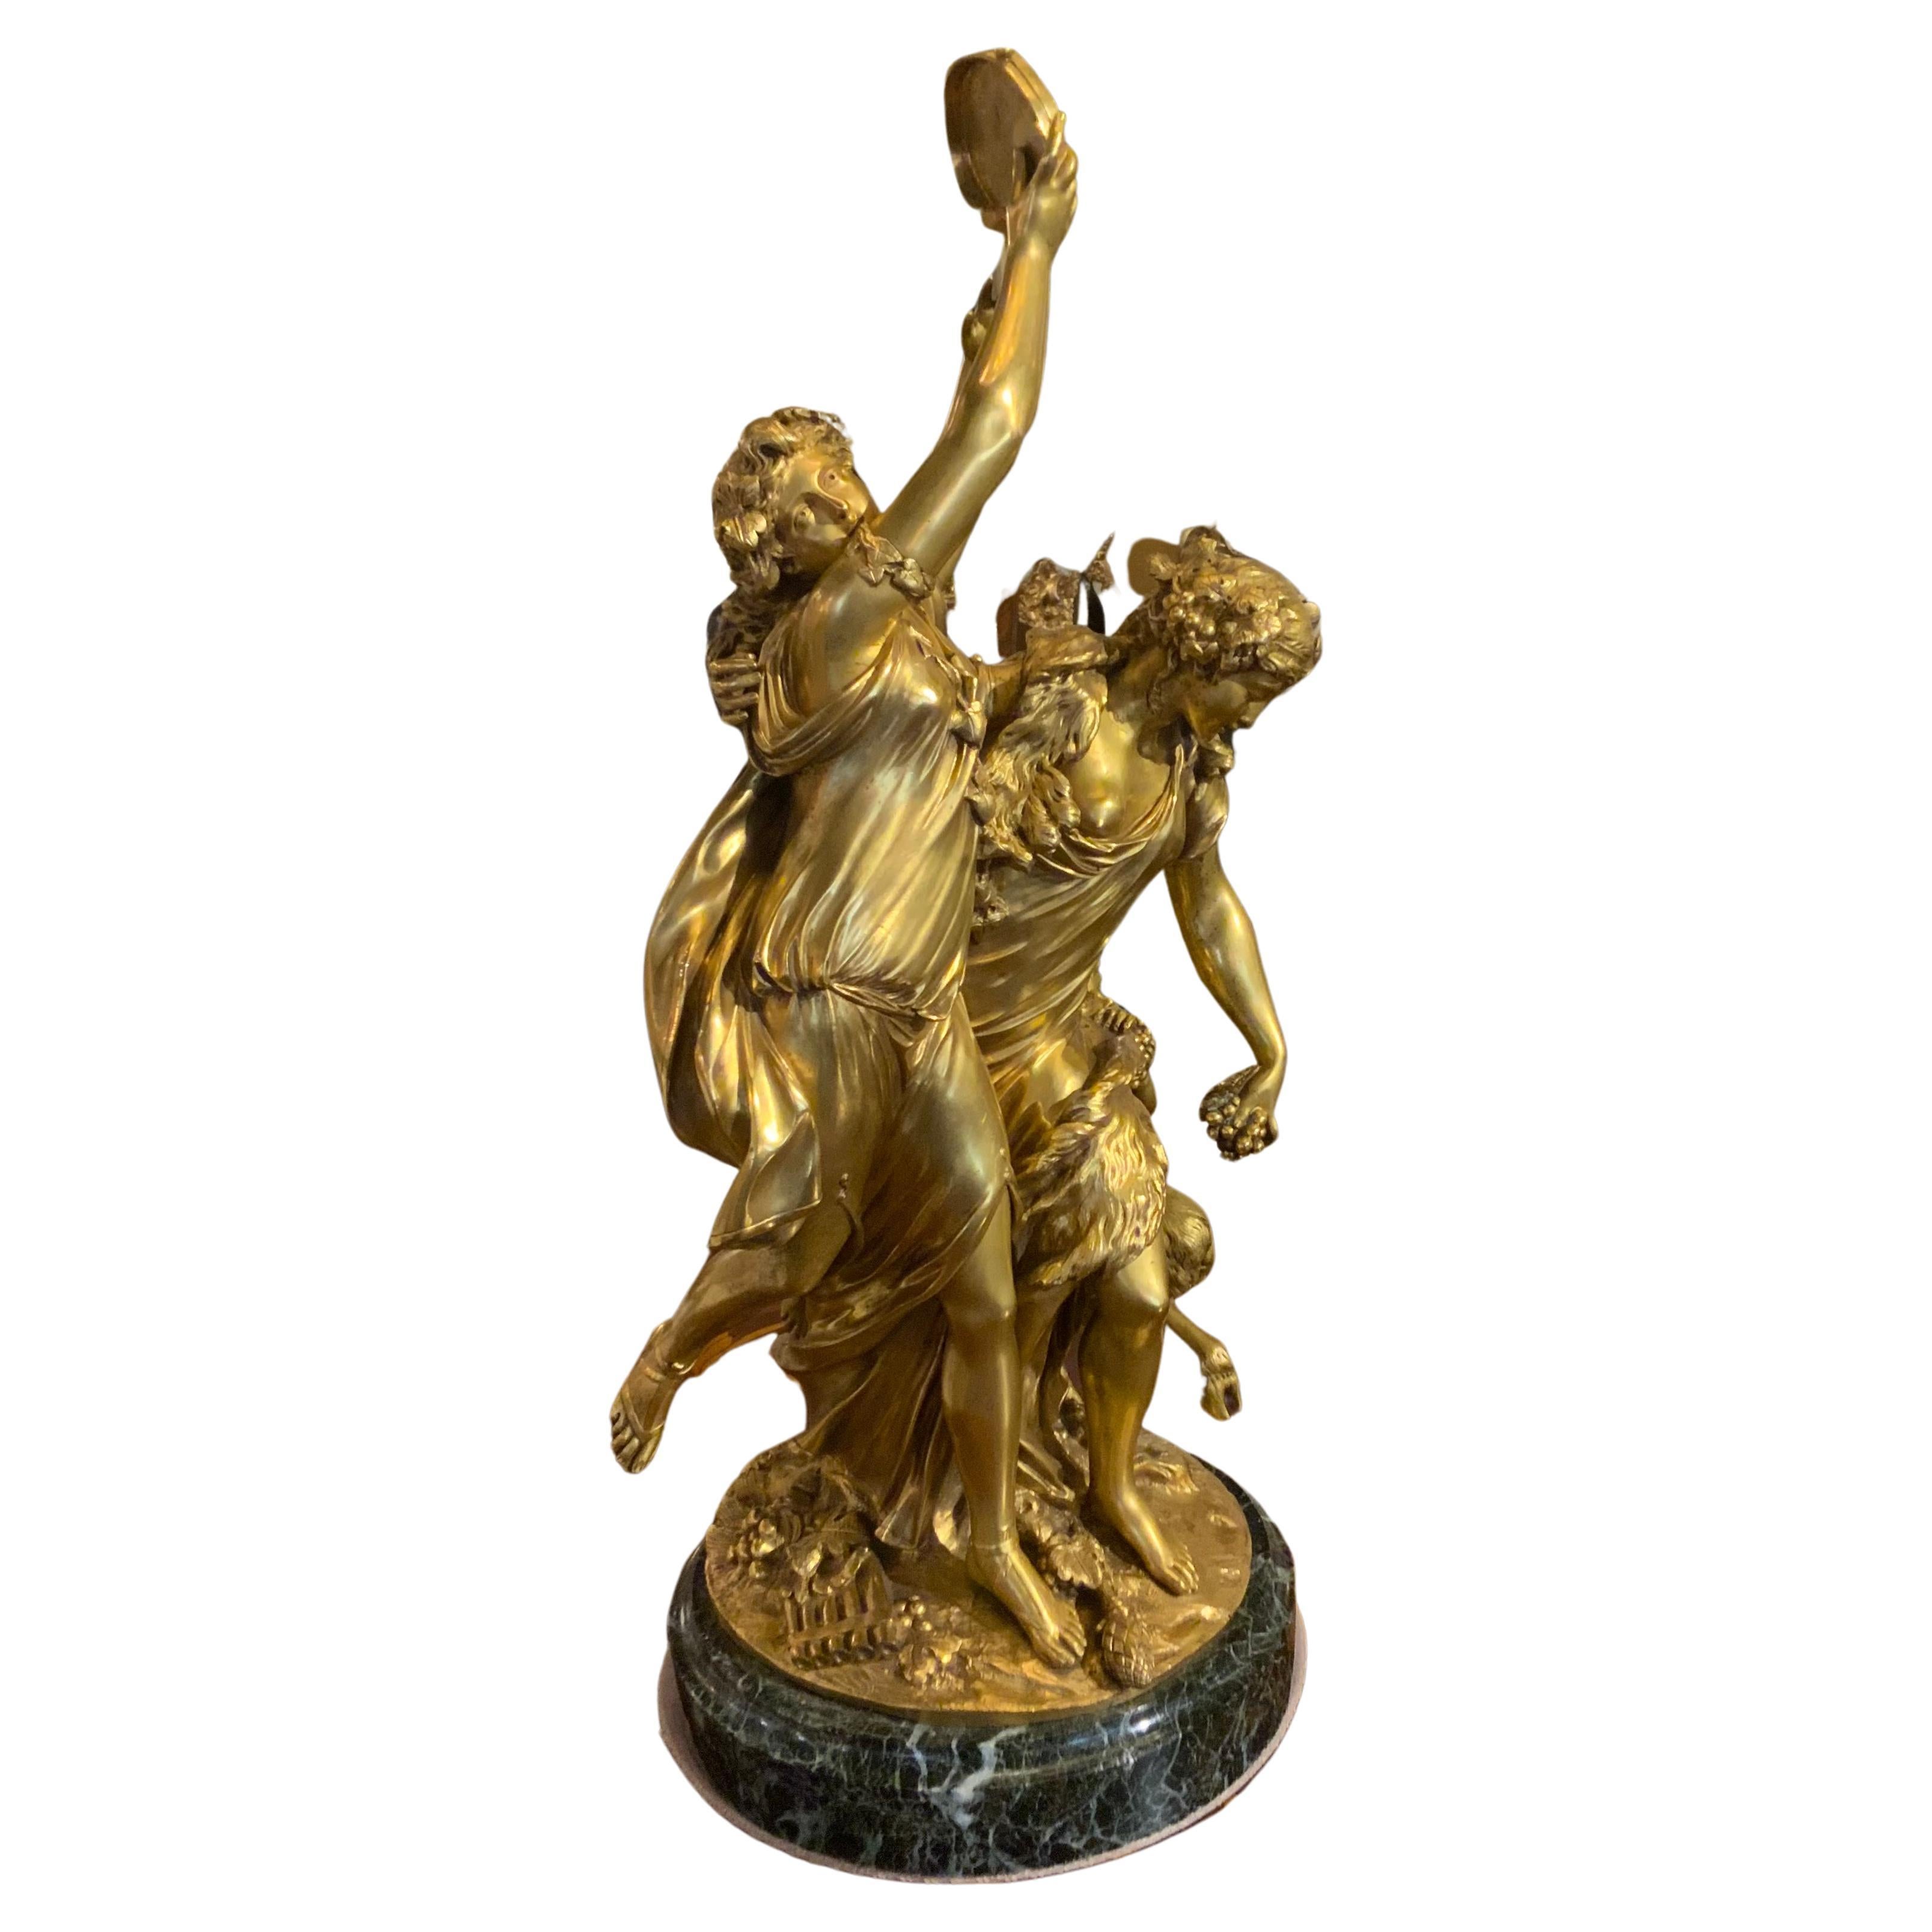 Vergoldete Bronzestatue nach Claude Michel Clodion, französischer Bildhauer, 1738-1814